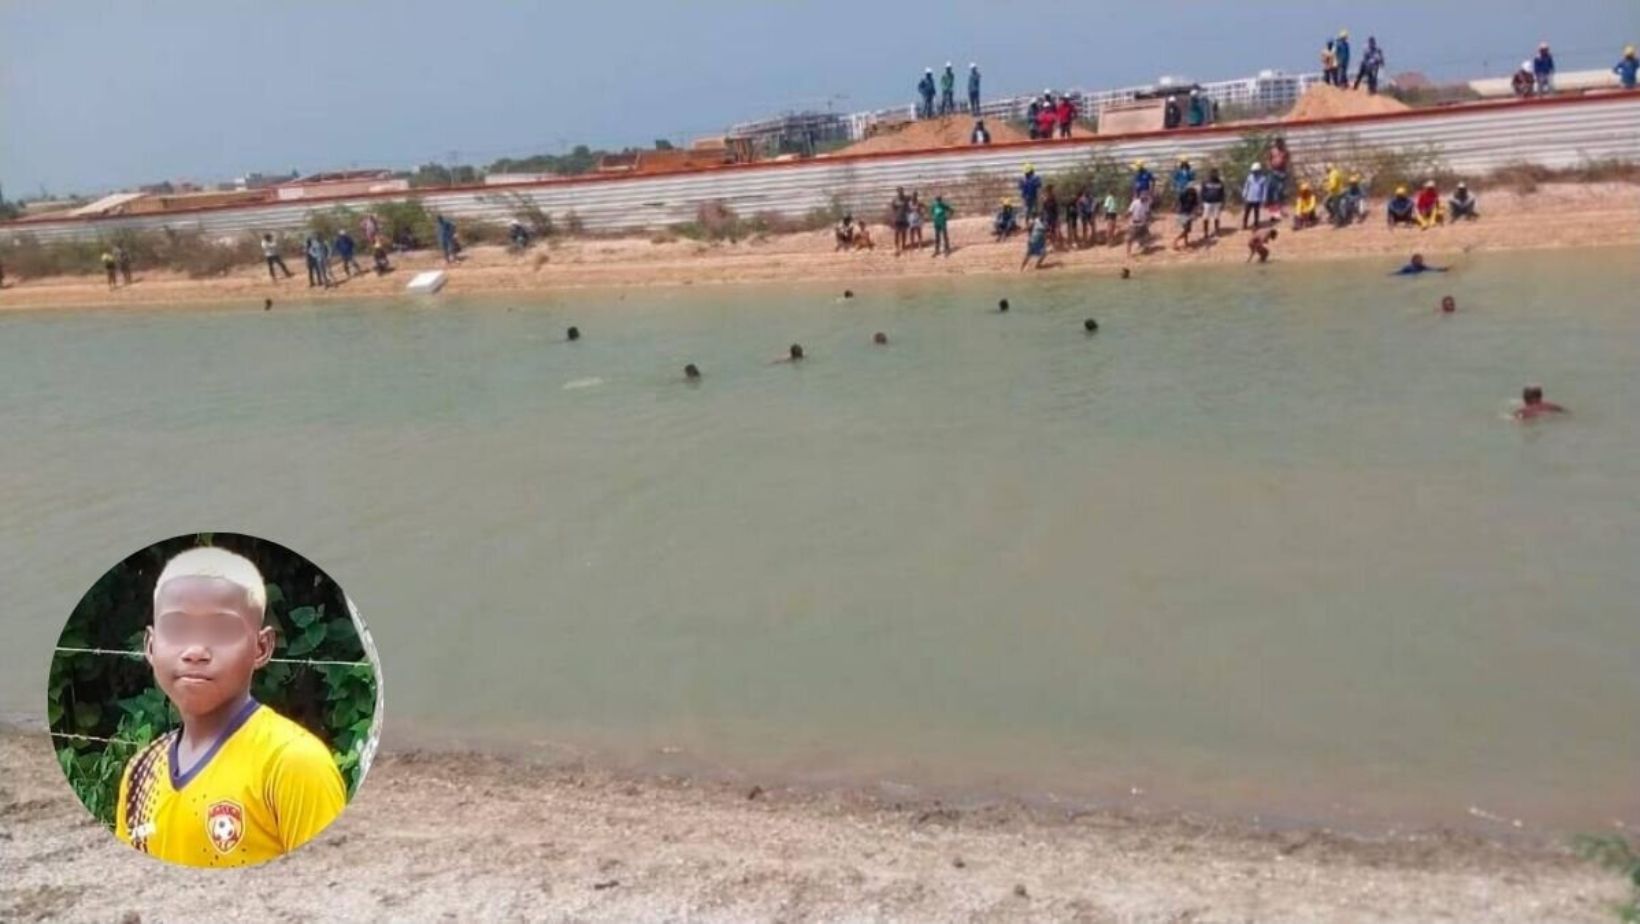 Joven de 13 años se ahogó en un lago de Cartagena; estaba con amigos